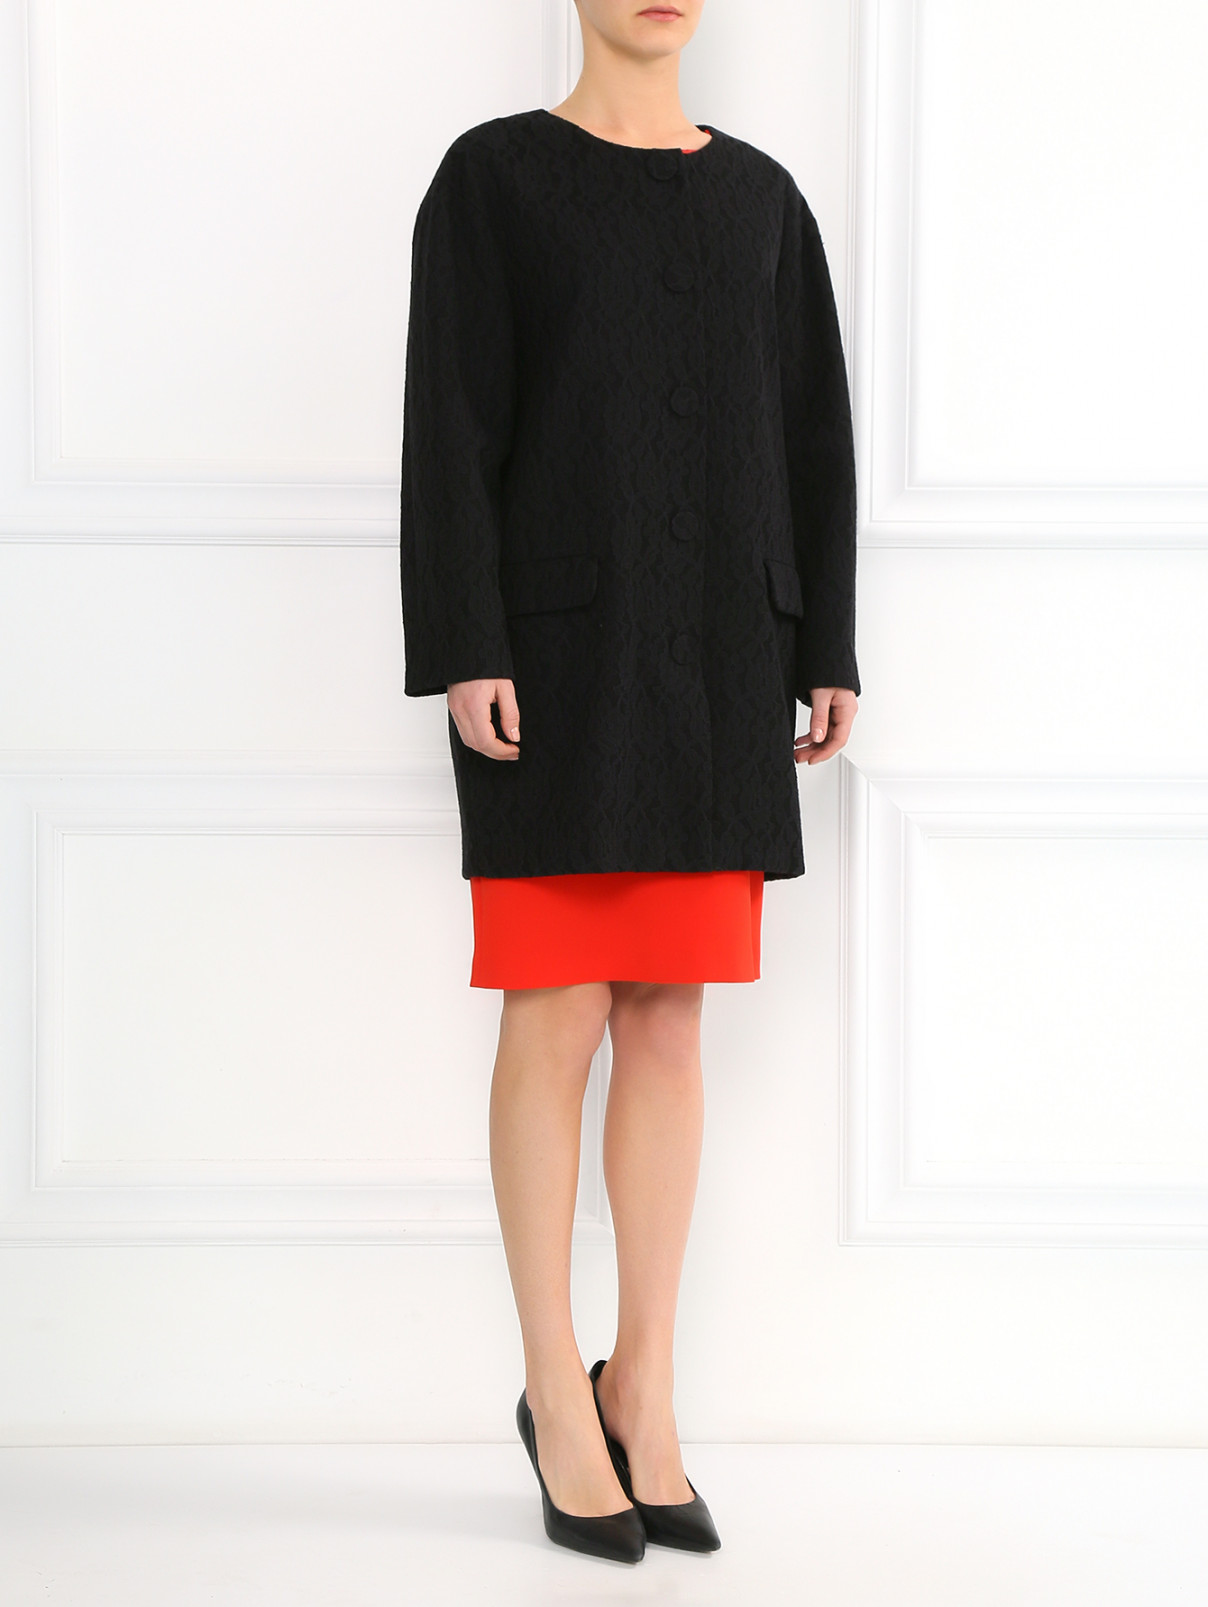 Пальто декорированное кружевом Moschino Boutique  –  Модель Общий вид  – Цвет:  Черный